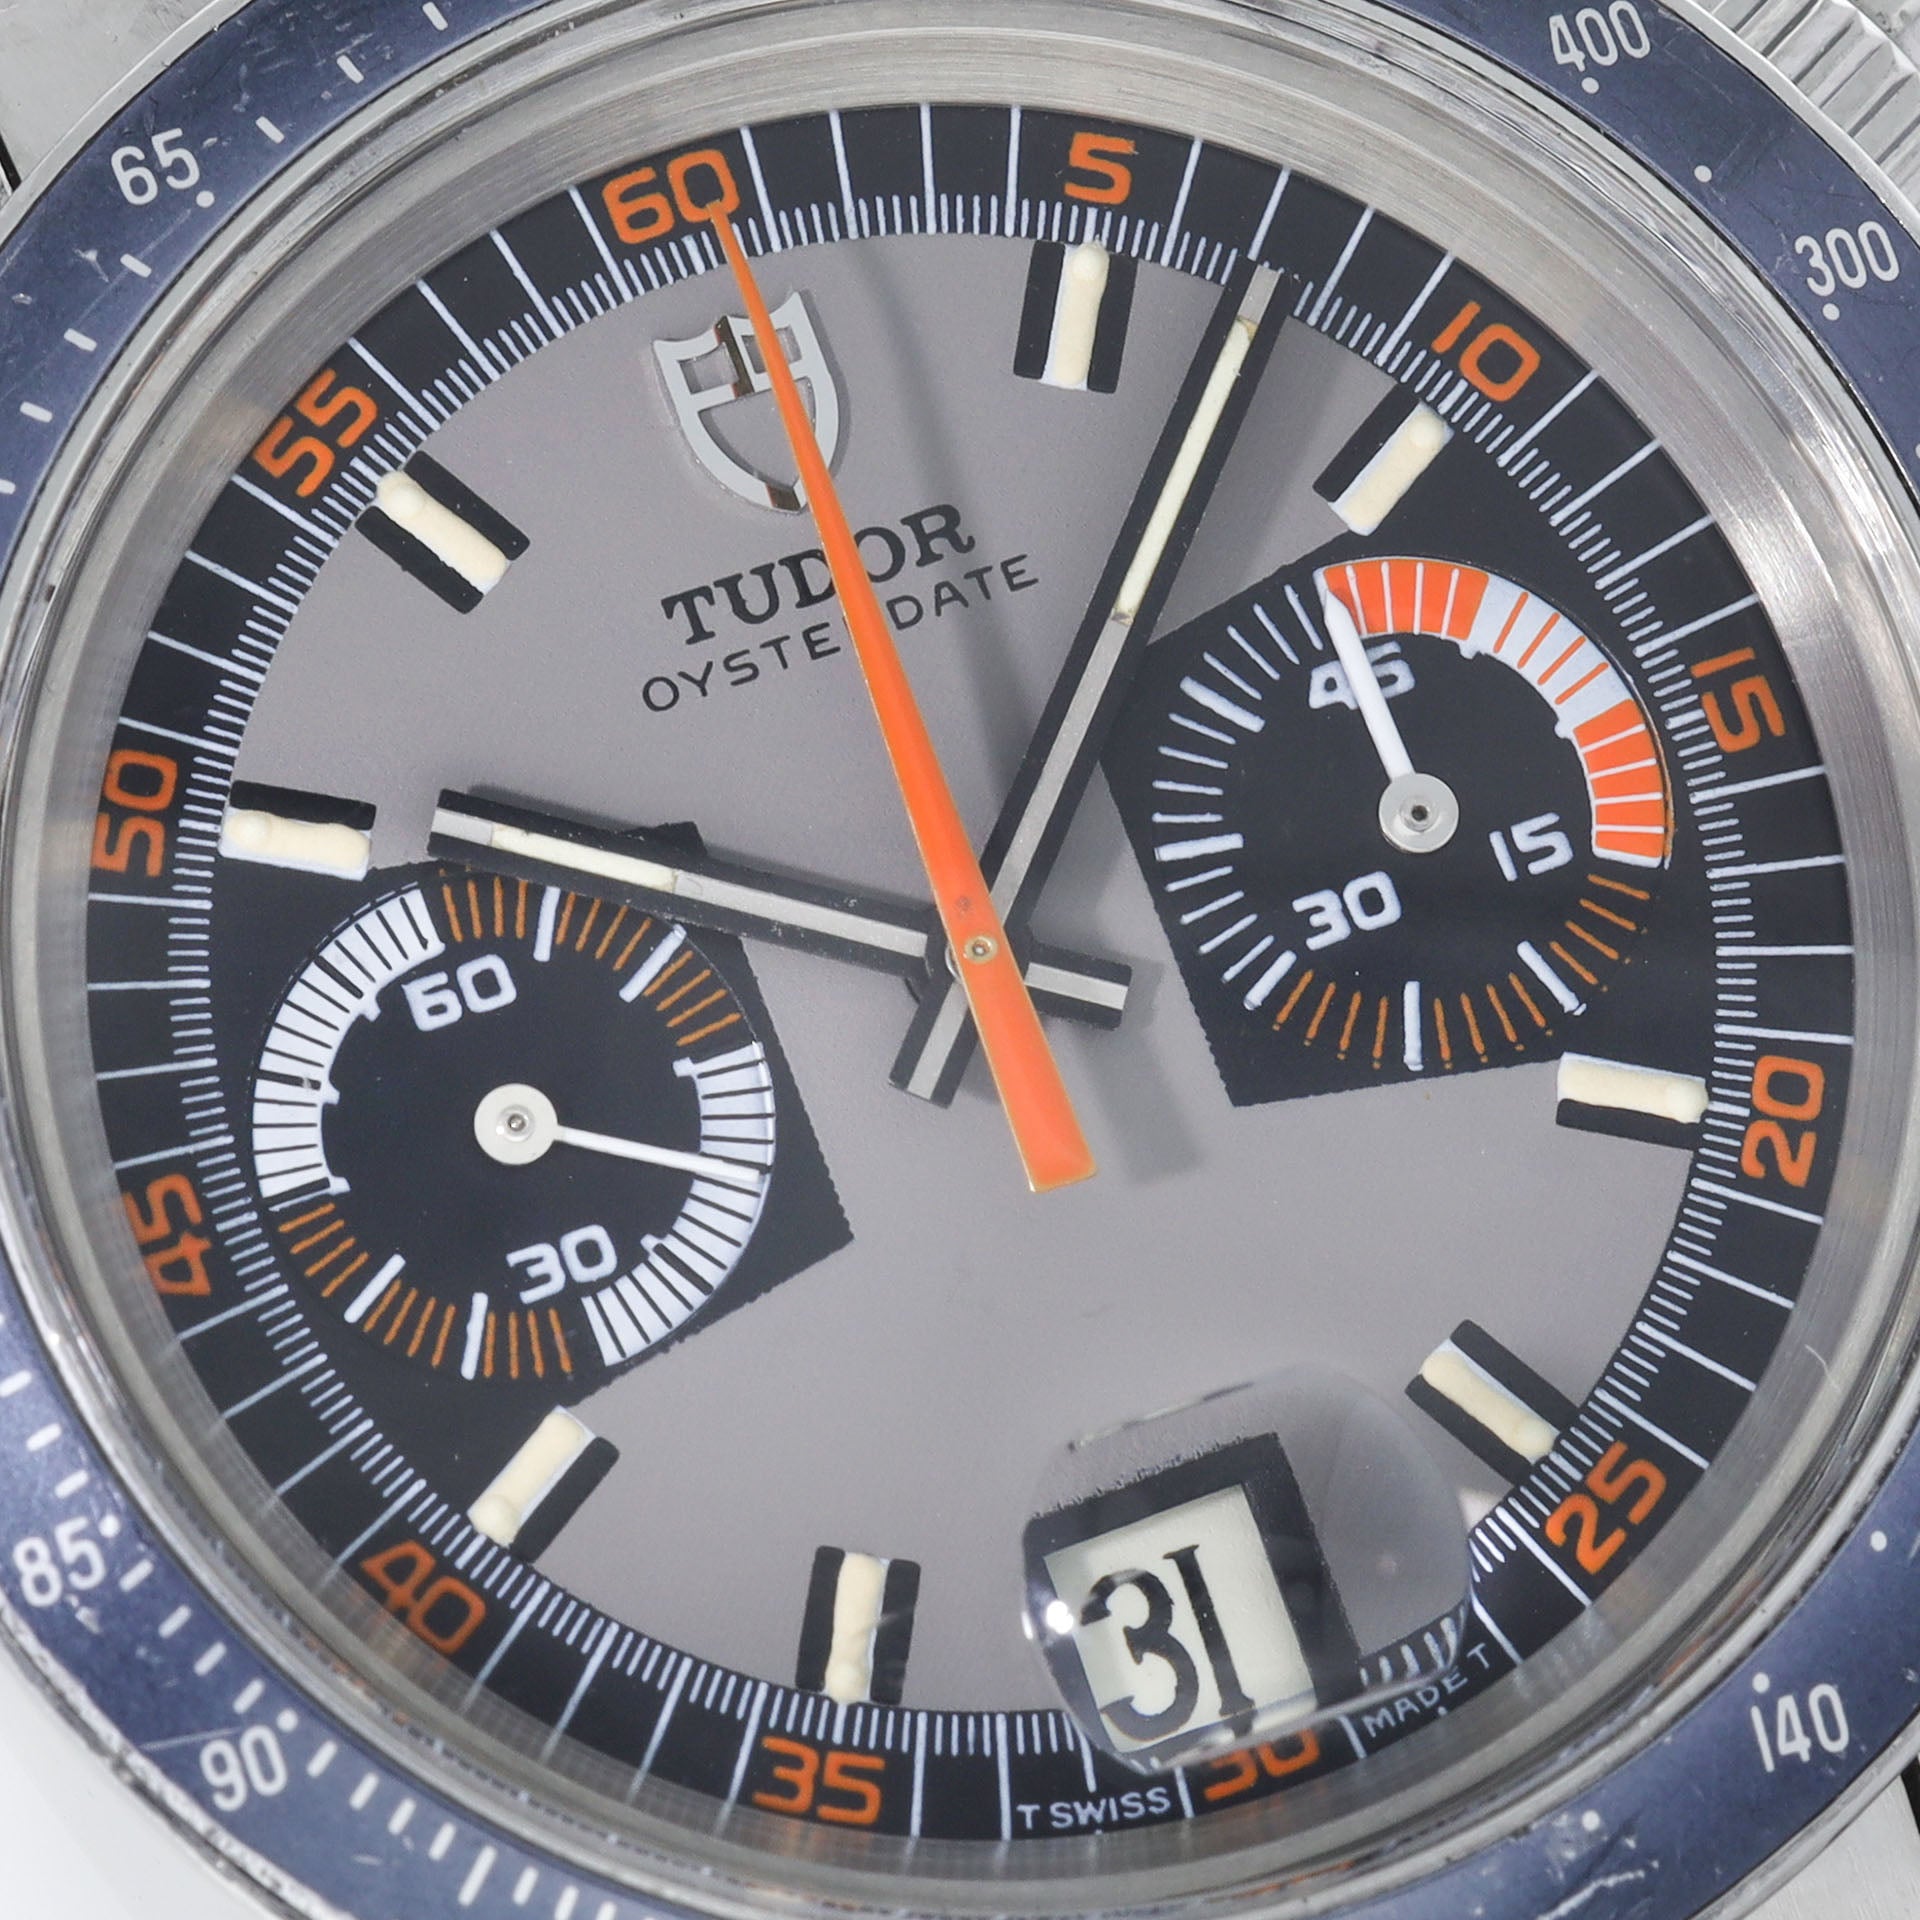 Tudor Oysterdate Chronograph 7149 Monte Carlo Grey Dial